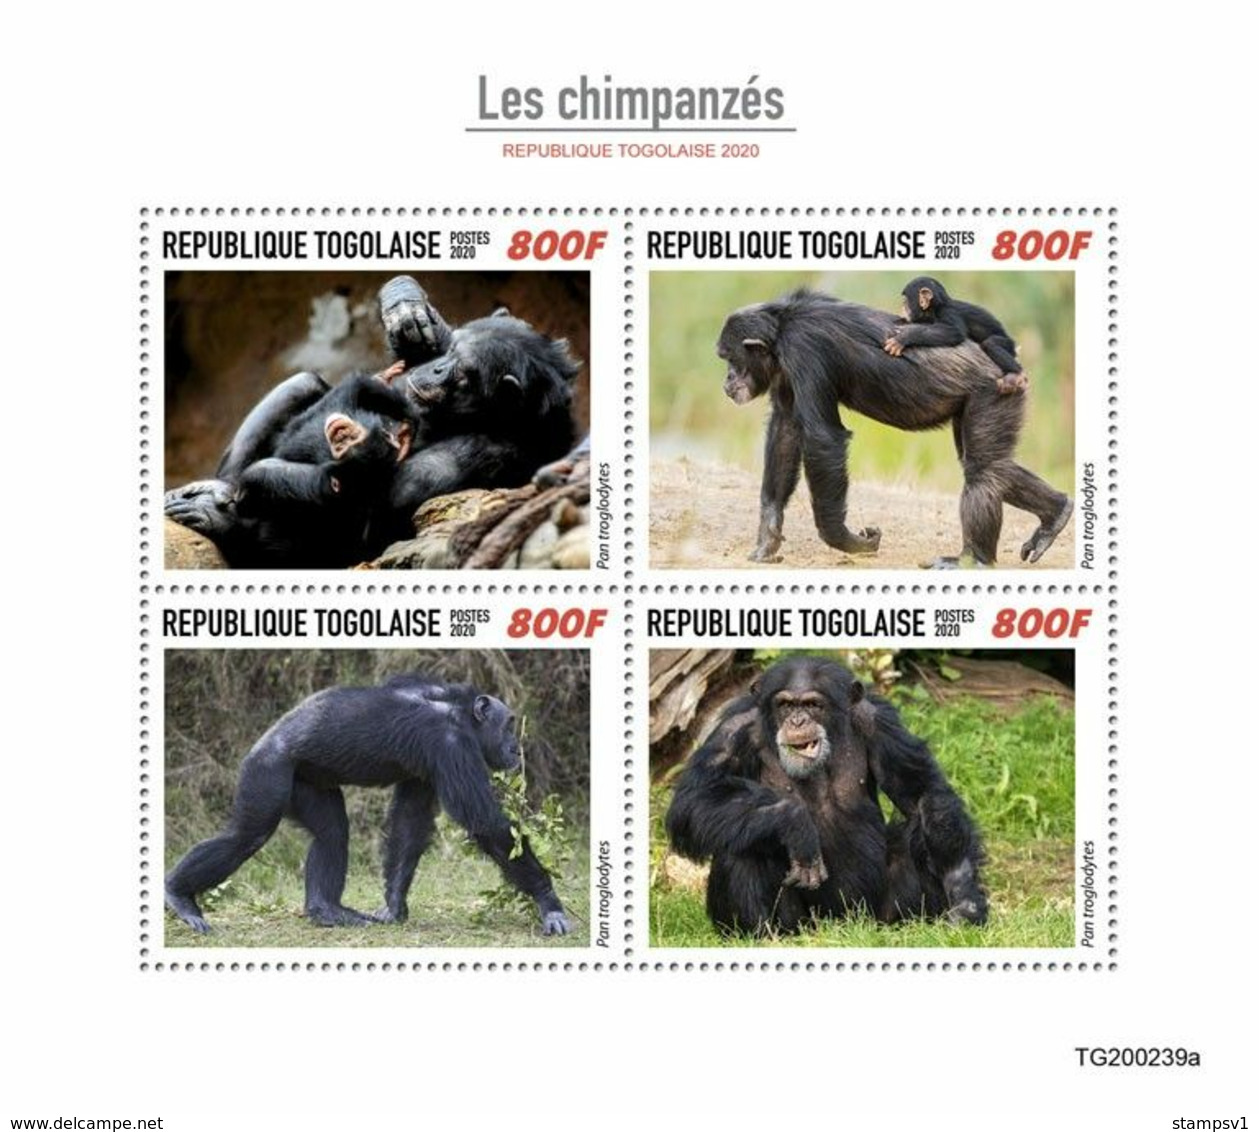 Togo 2020 Chimpanzees. (0239a) OFFICIAL ISSUE - Chimpanzés